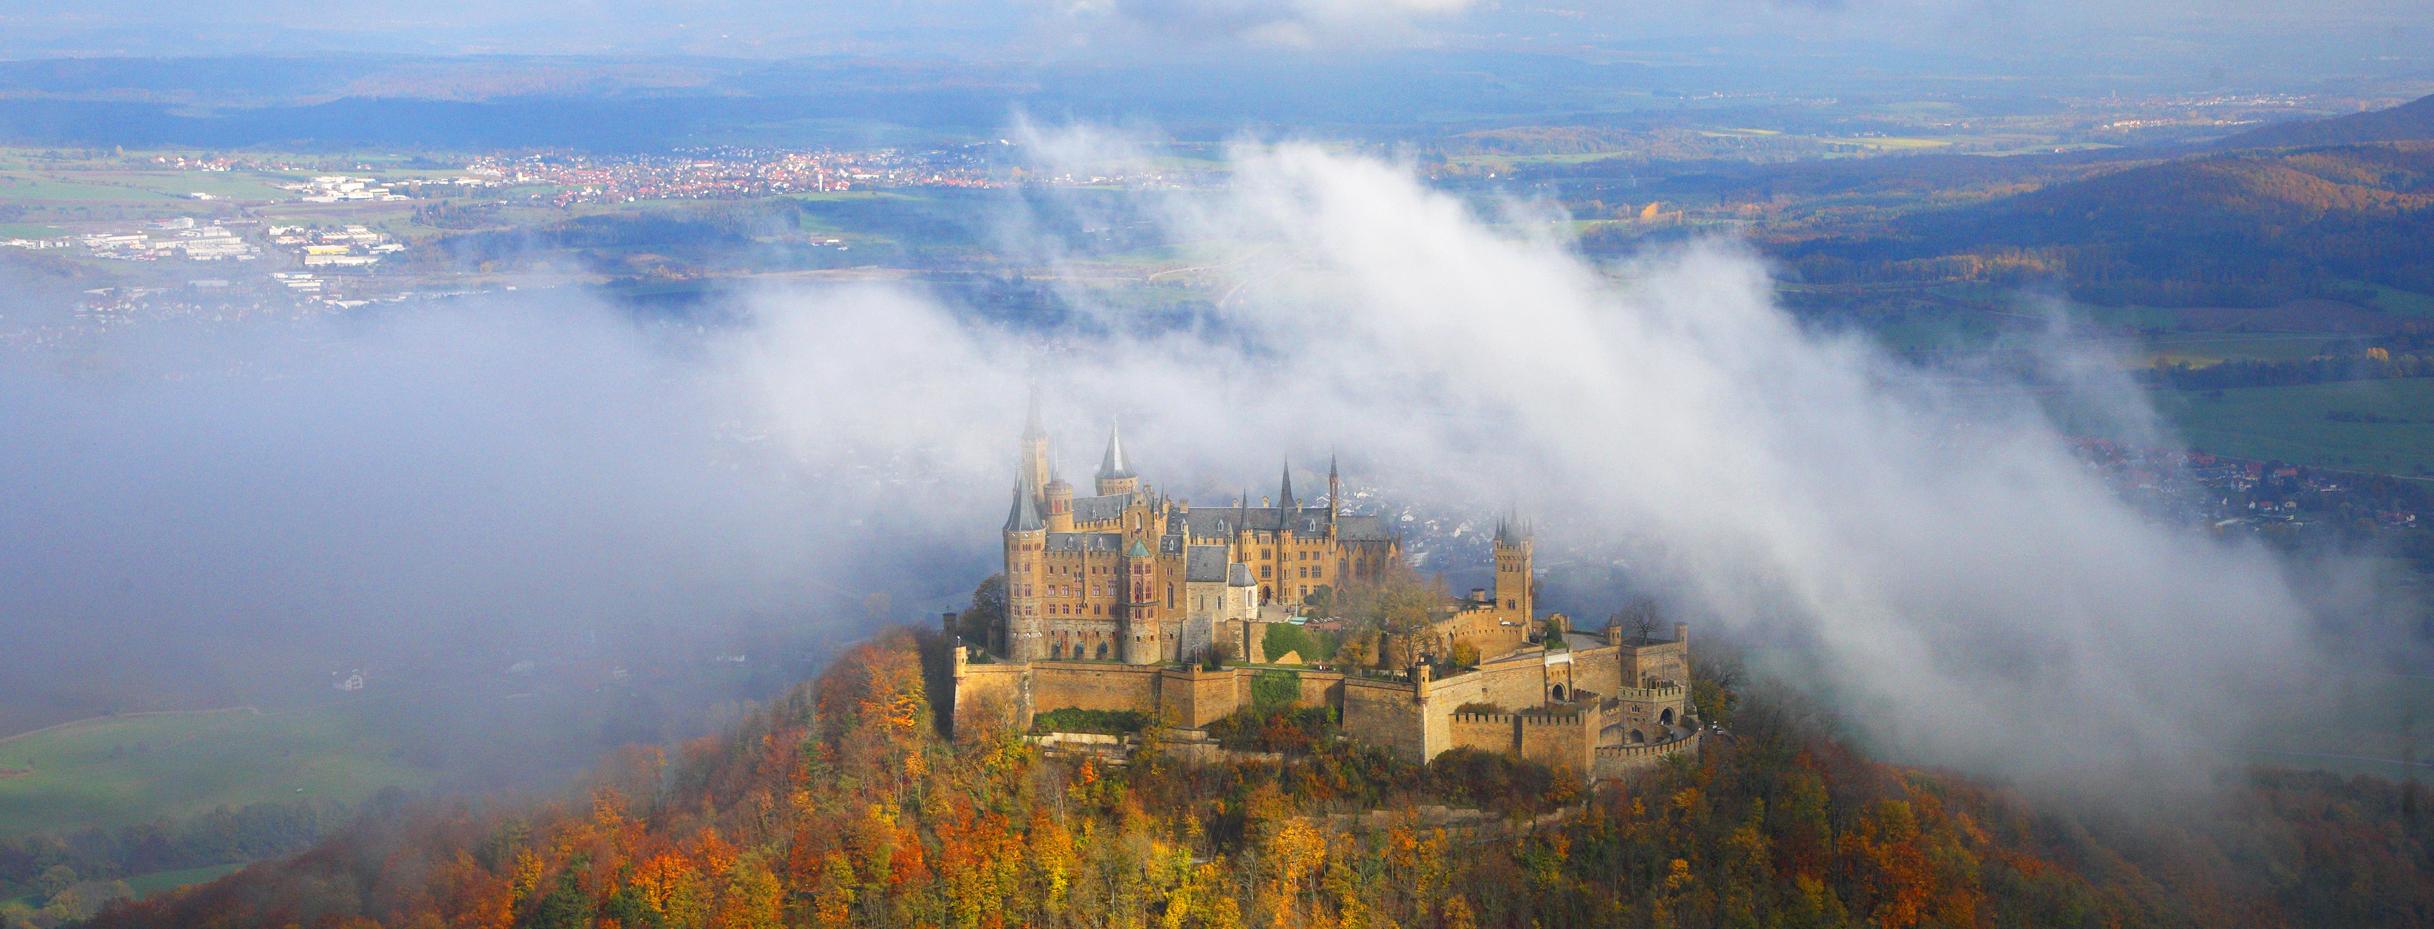 Burg Hohenzollern auf der Schwäbischen Alb im Nebel